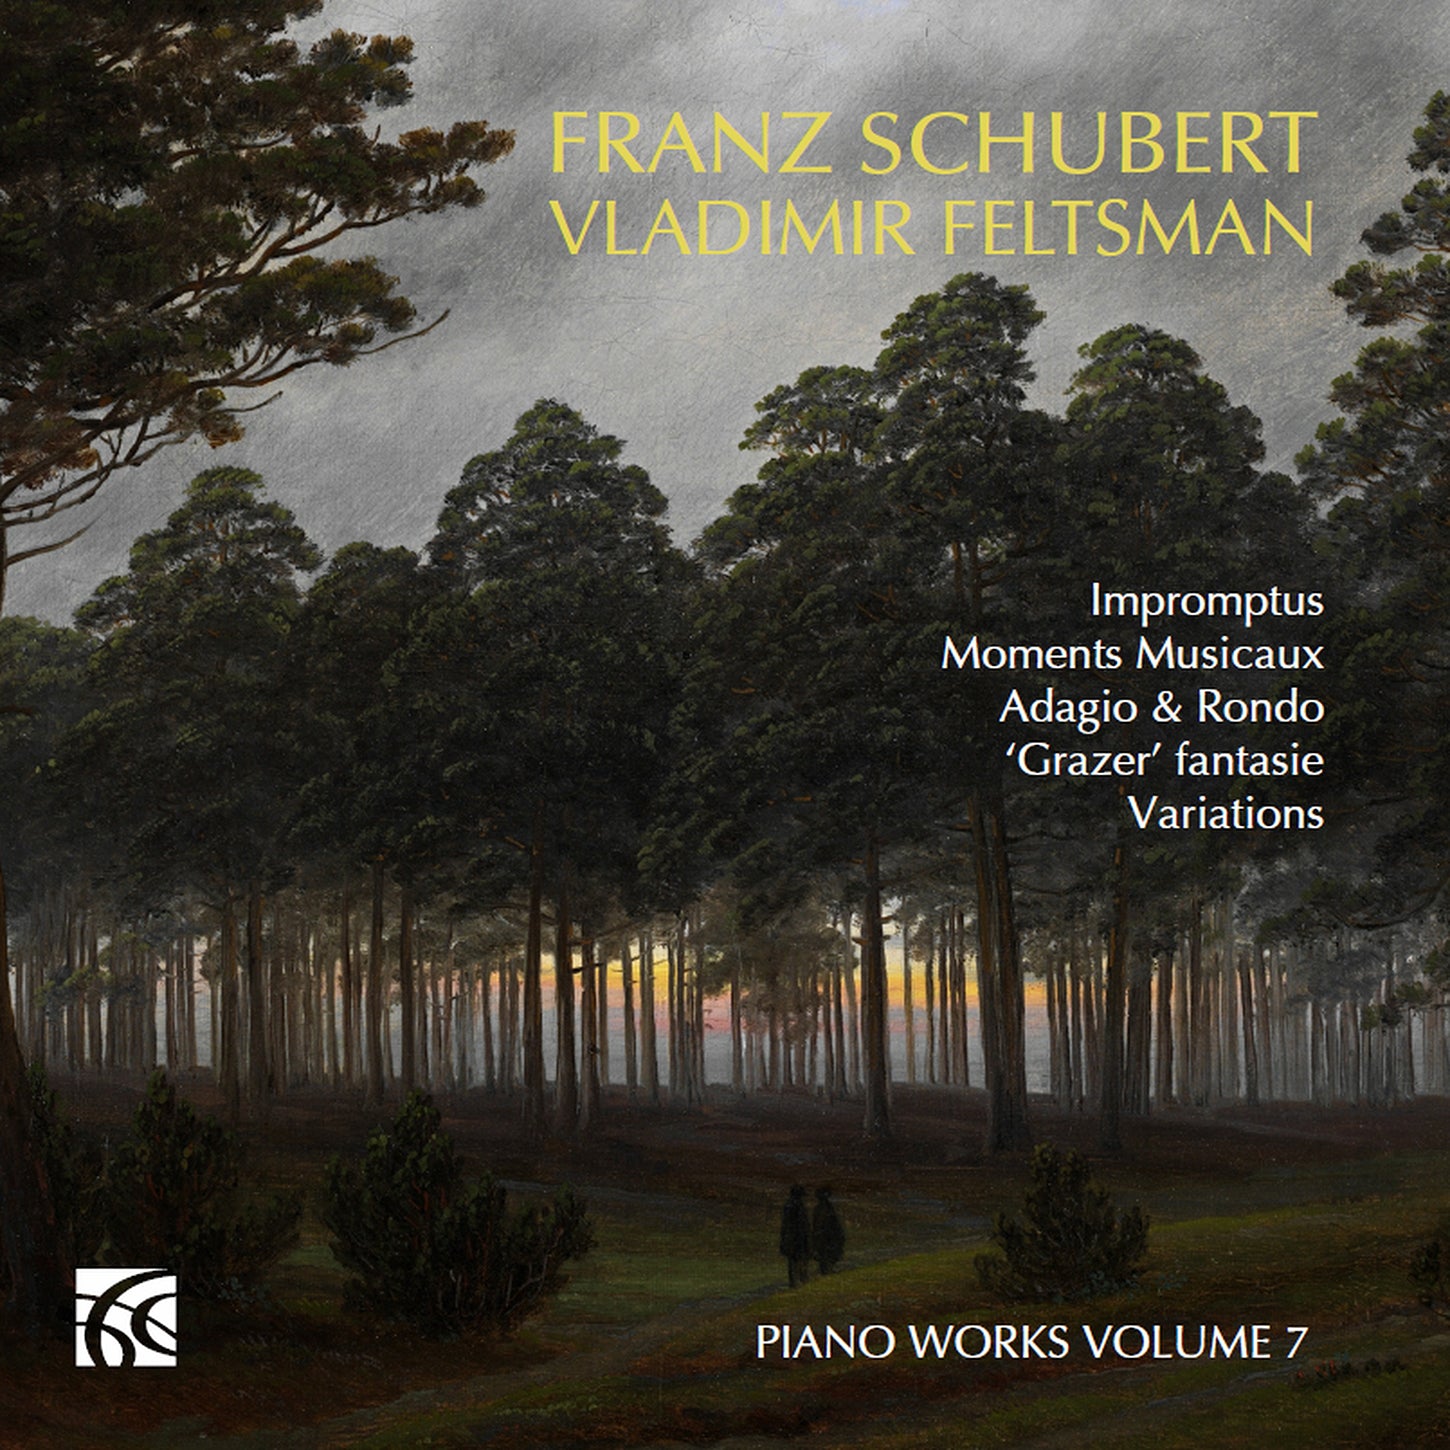 Schubert: Piano Works, Vol. 7 / Feltsman